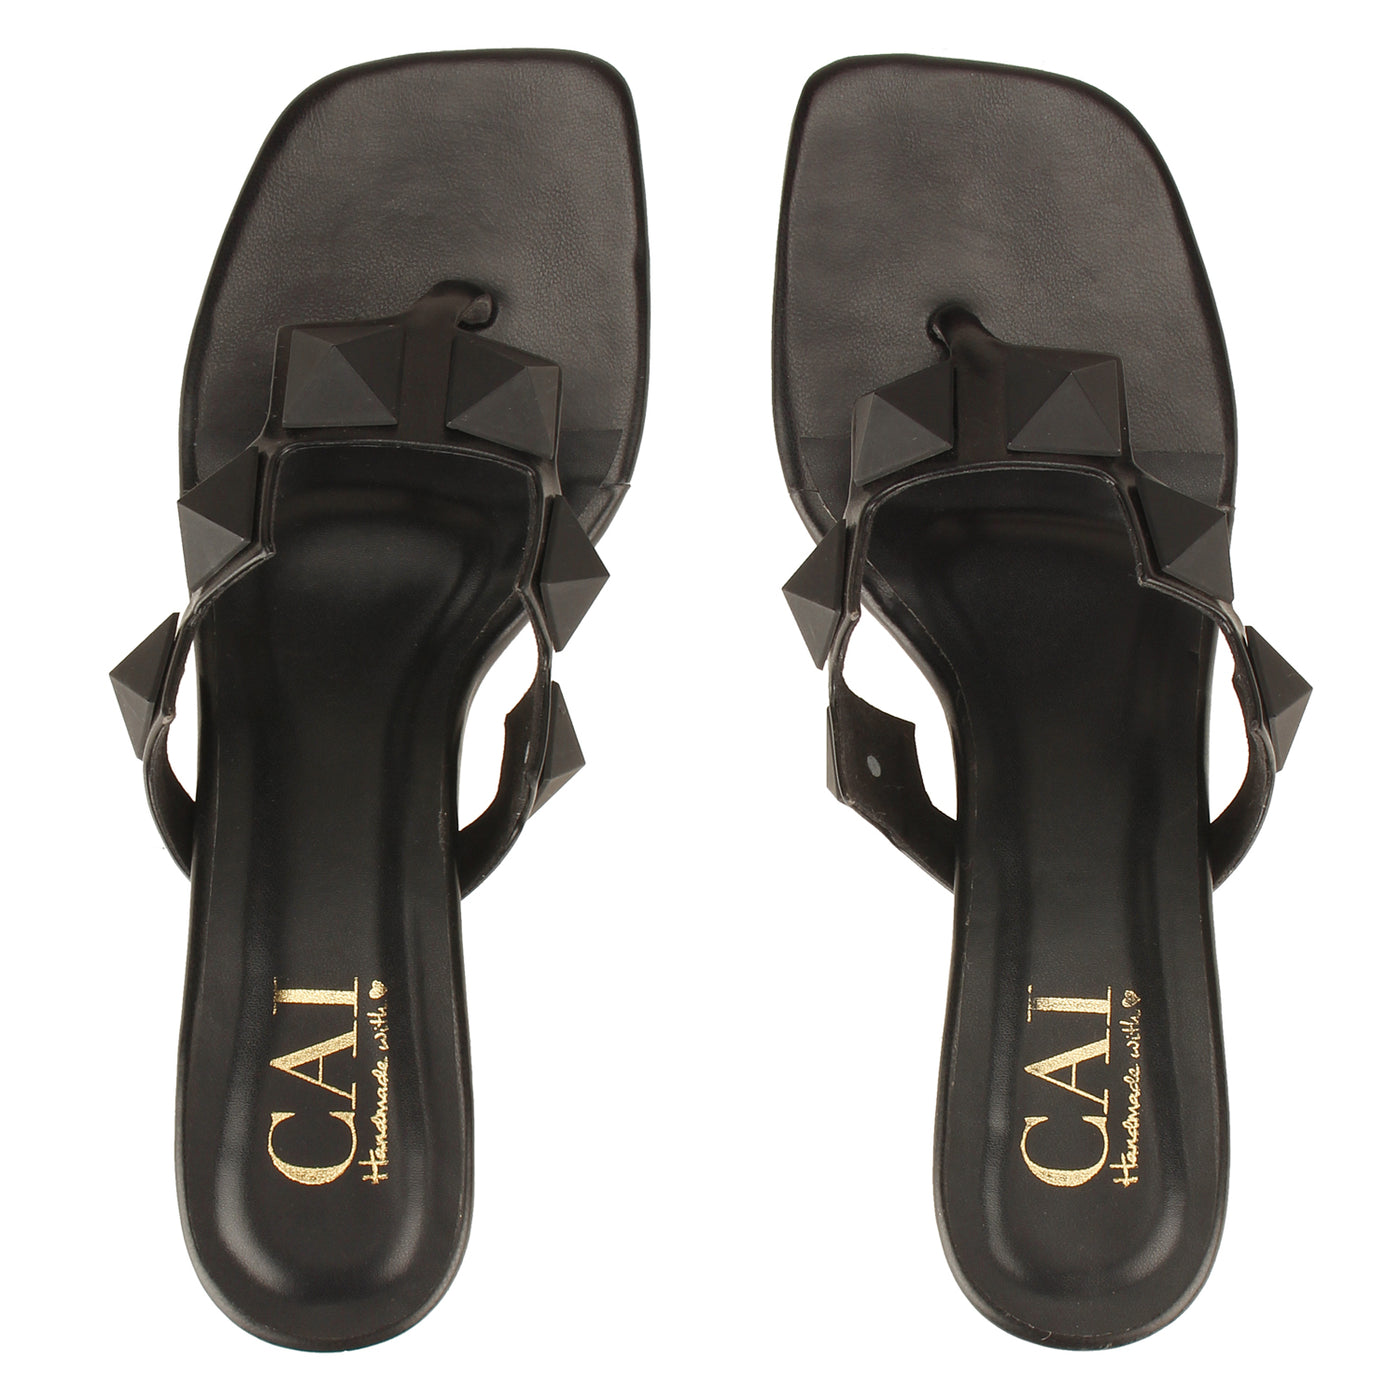 Buy Women's Black Studded Heels Online